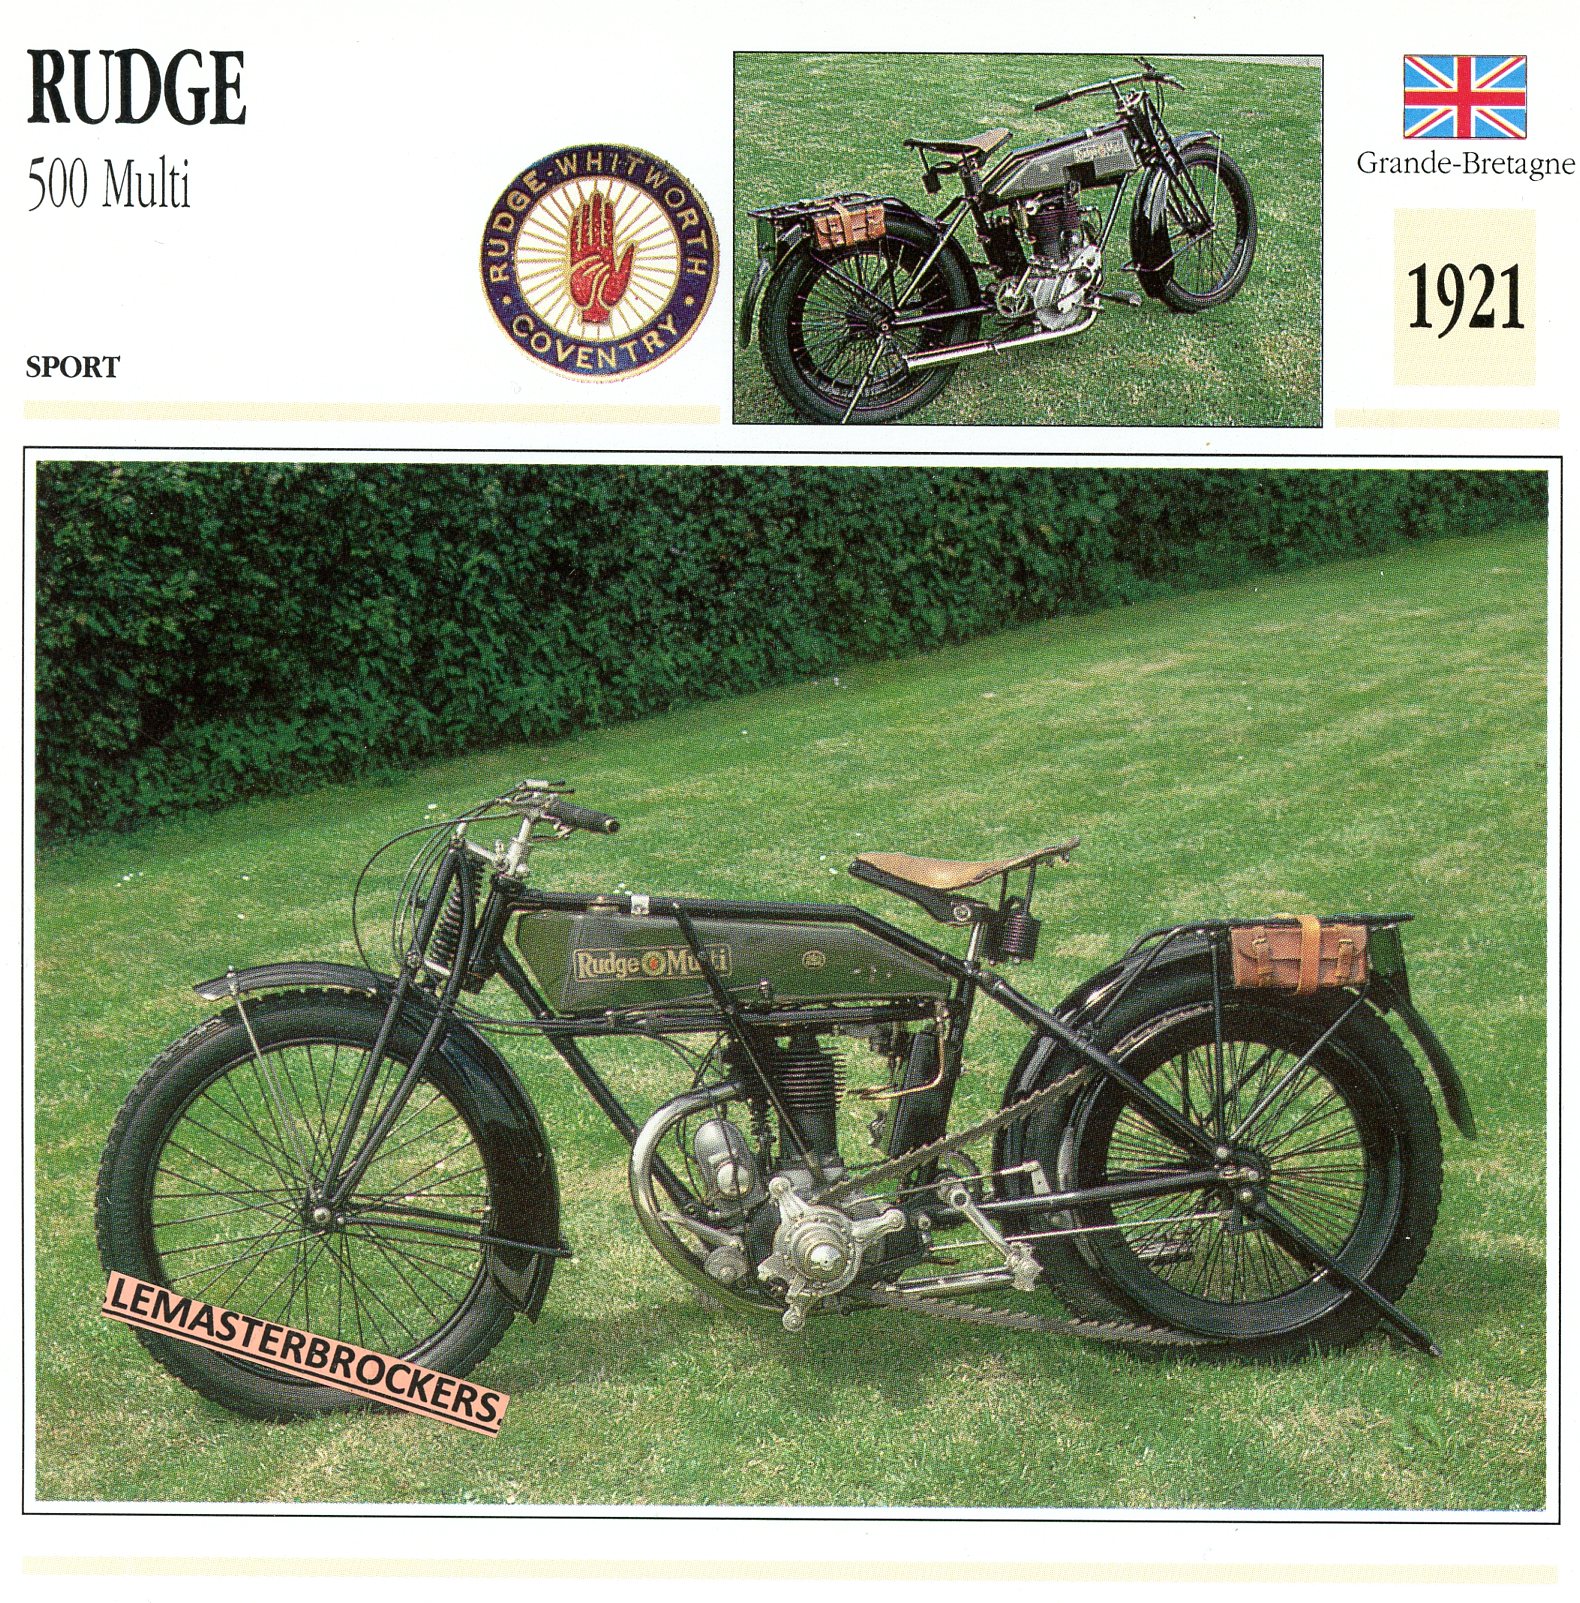 RUDGE 500 MULTI 1921 - FICHE MOTO ATLAS